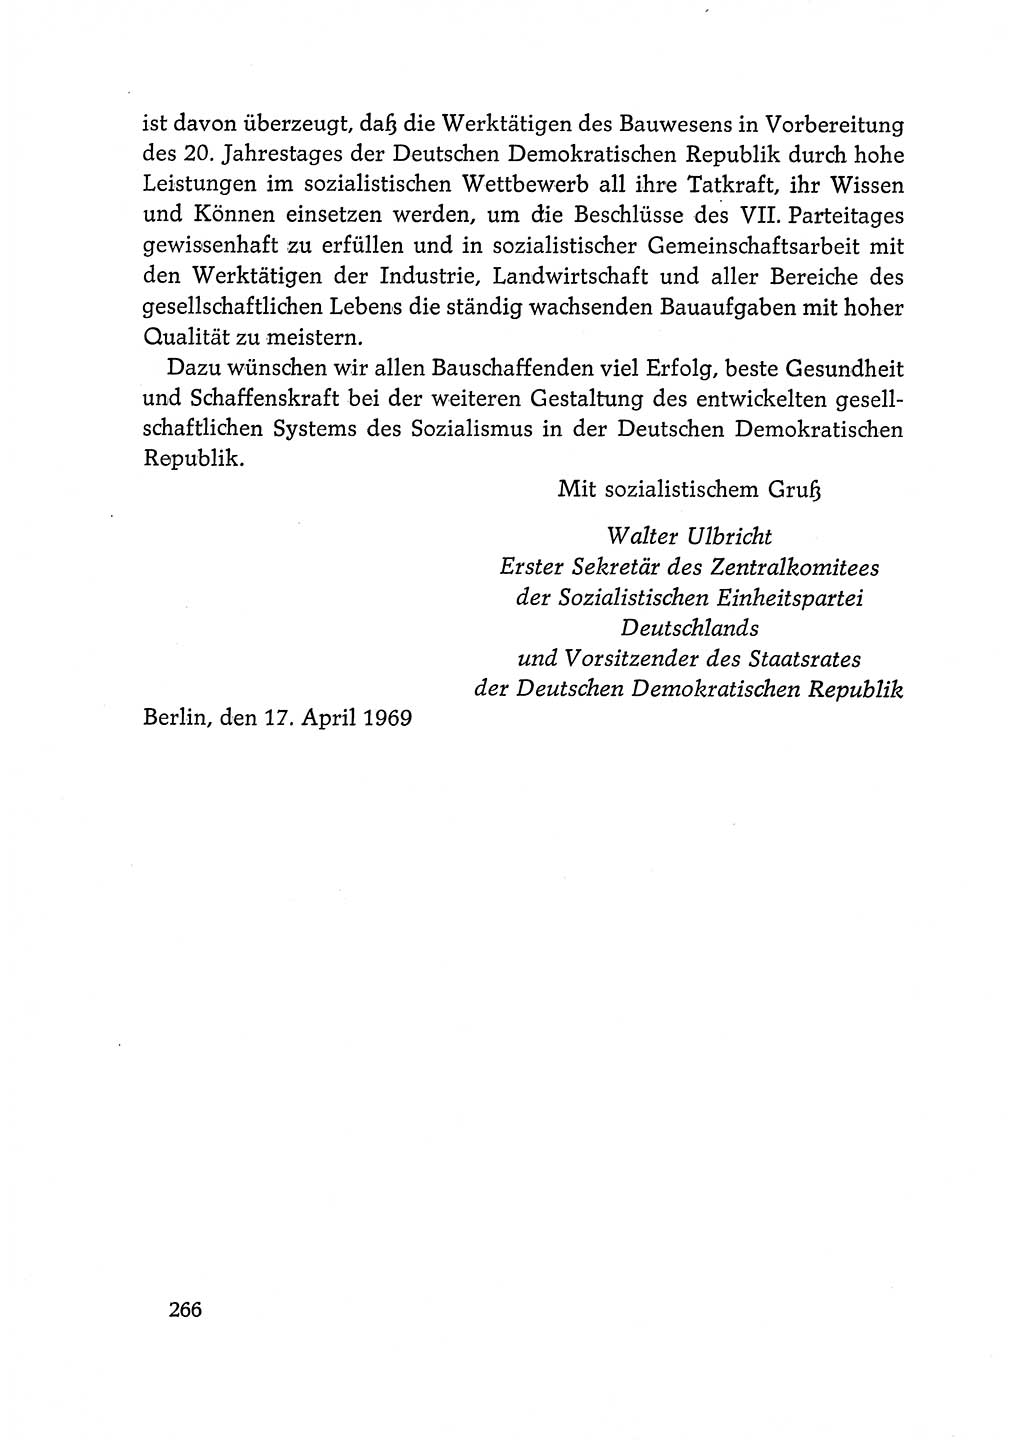 Dokumente der Sozialistischen Einheitspartei Deutschlands (SED) [Deutsche Demokratische Republik (DDR)] 1968-1969, Seite 266 (Dok. SED DDR 1968-1969, S. 266)